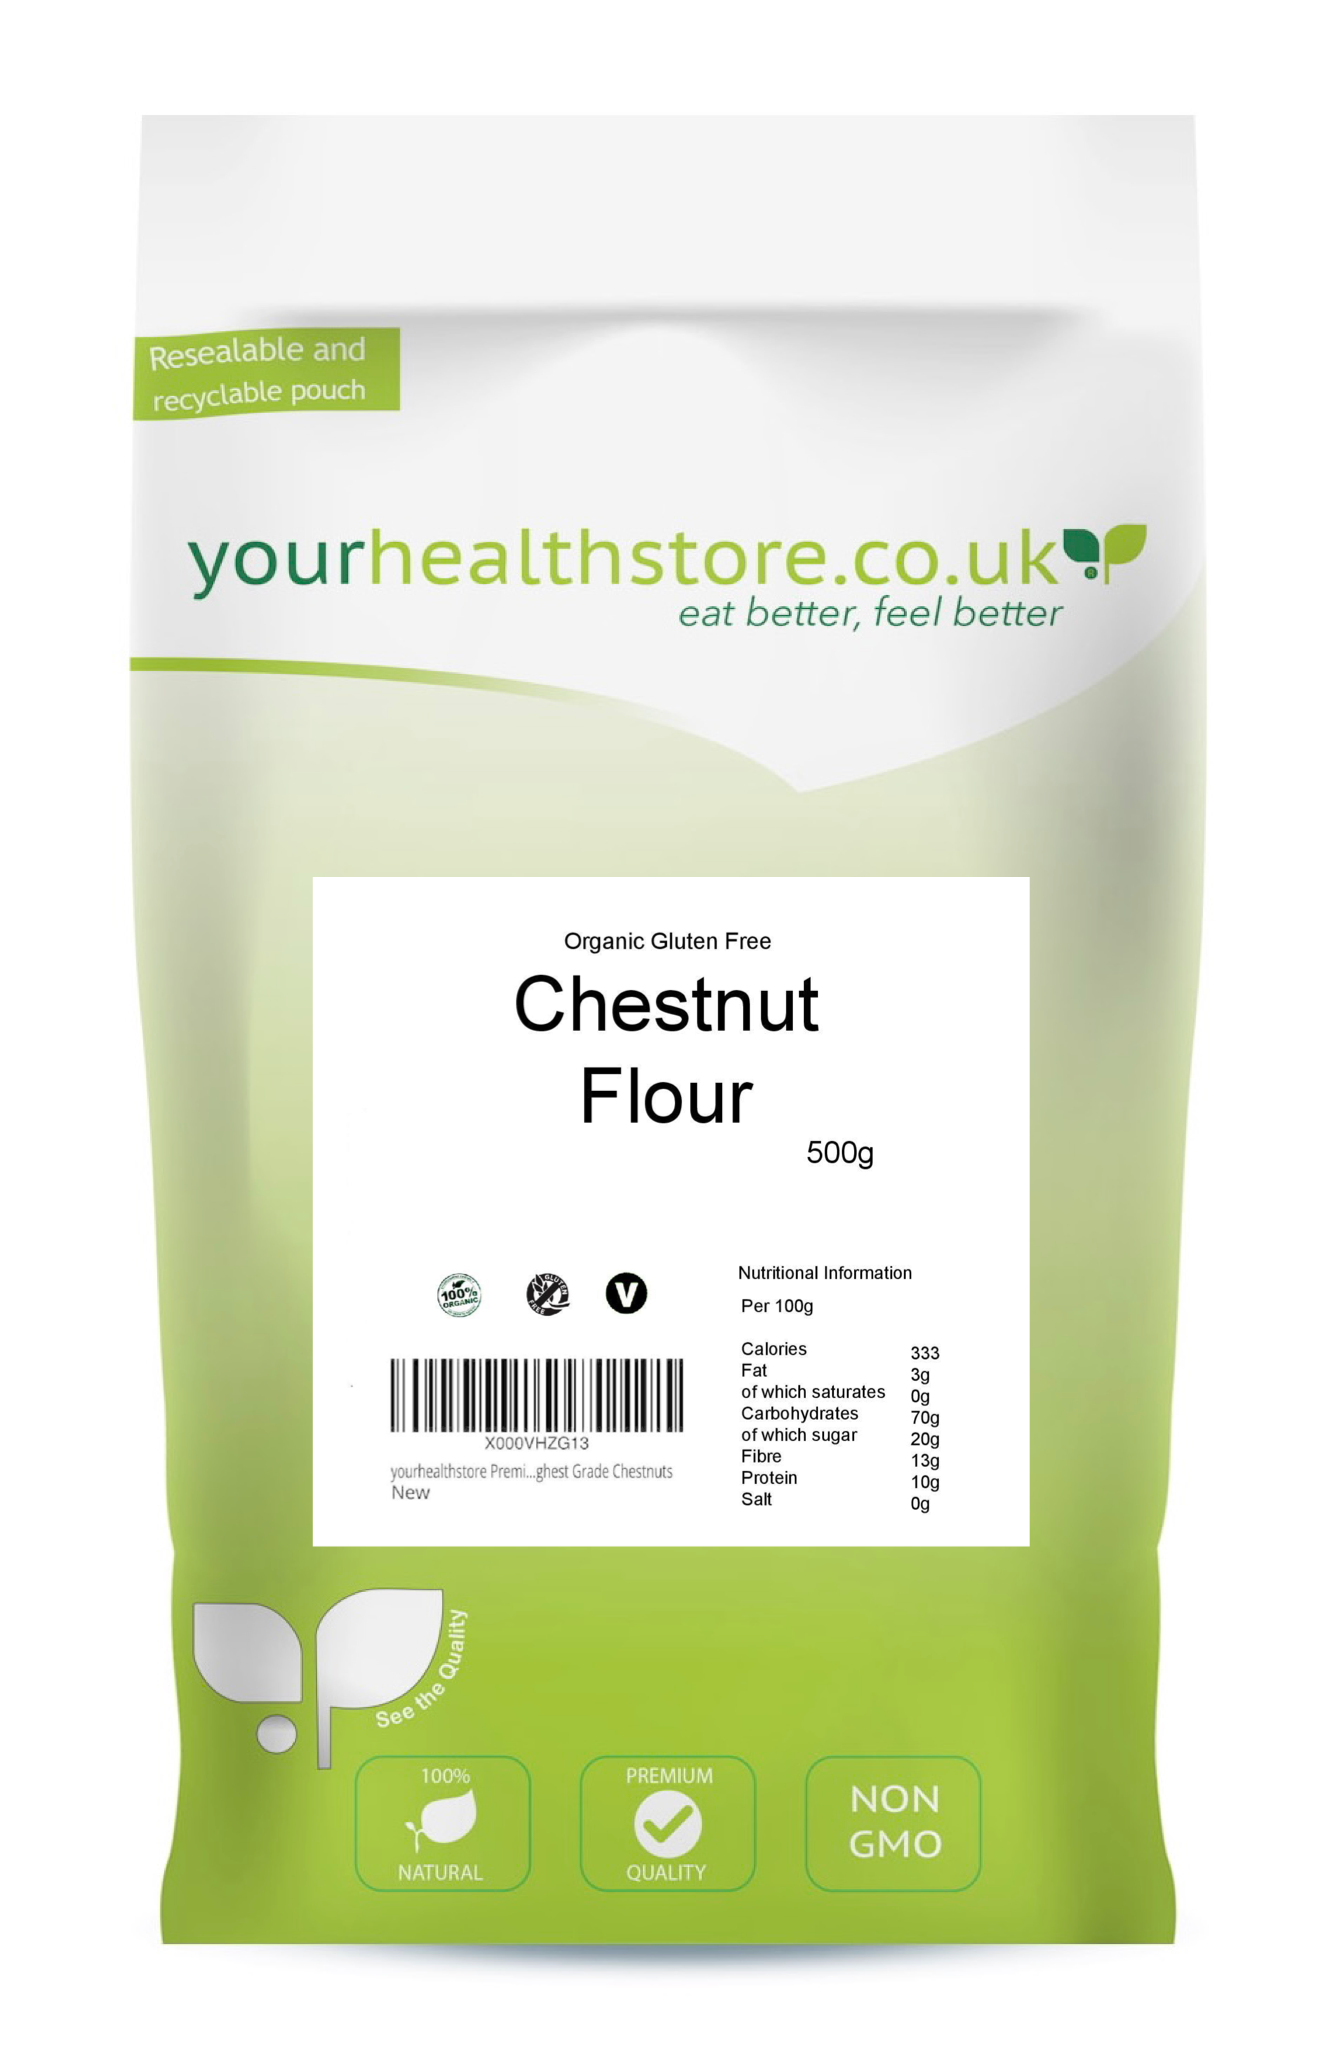 yourhealthstore Premium Gluten Free Chestnut Flour 500g